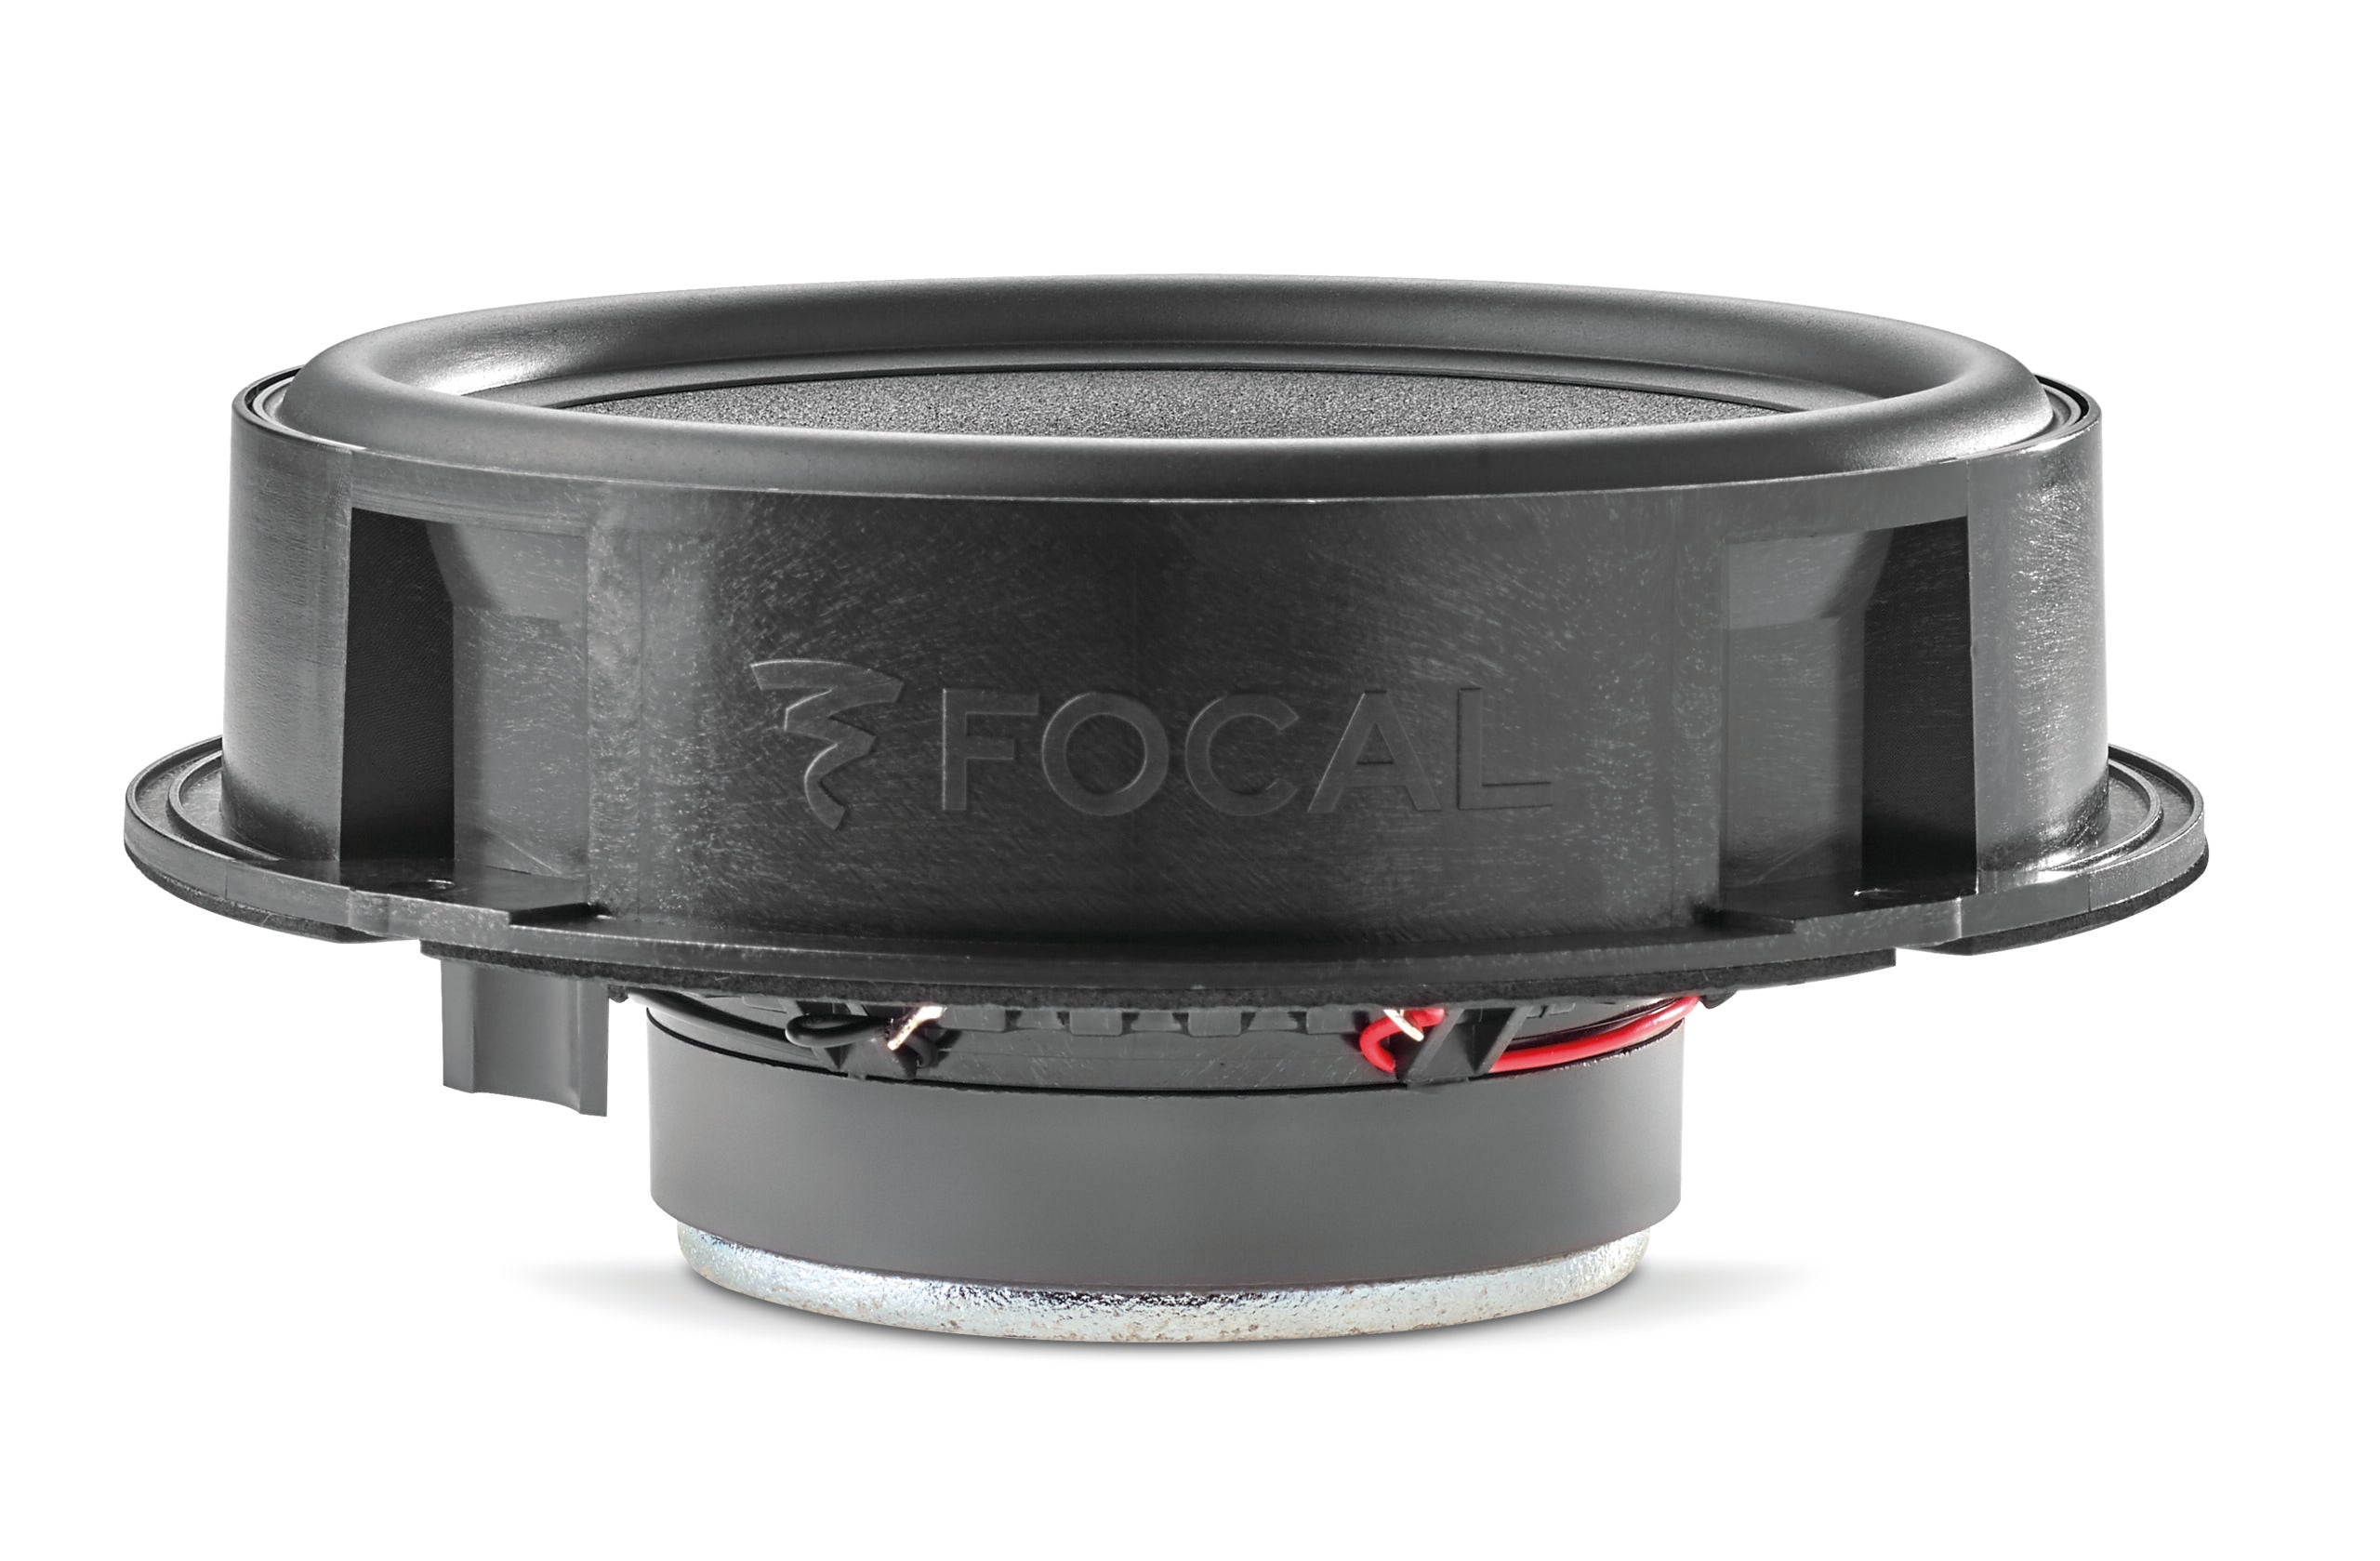 Focal IS VW 180 Volkswagen Compatible 7.1 Inch speakers